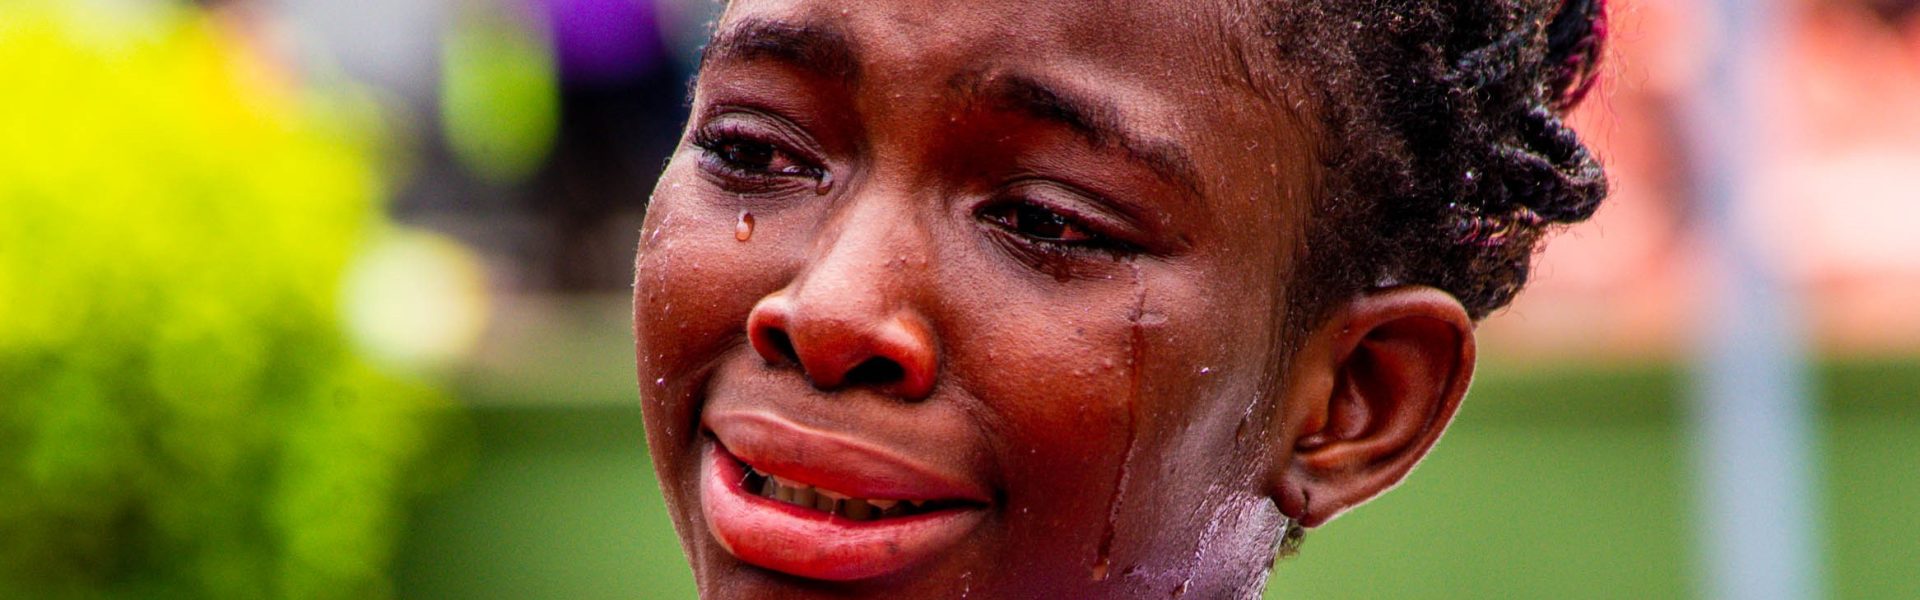 Mofifunoluwa Atilola crying